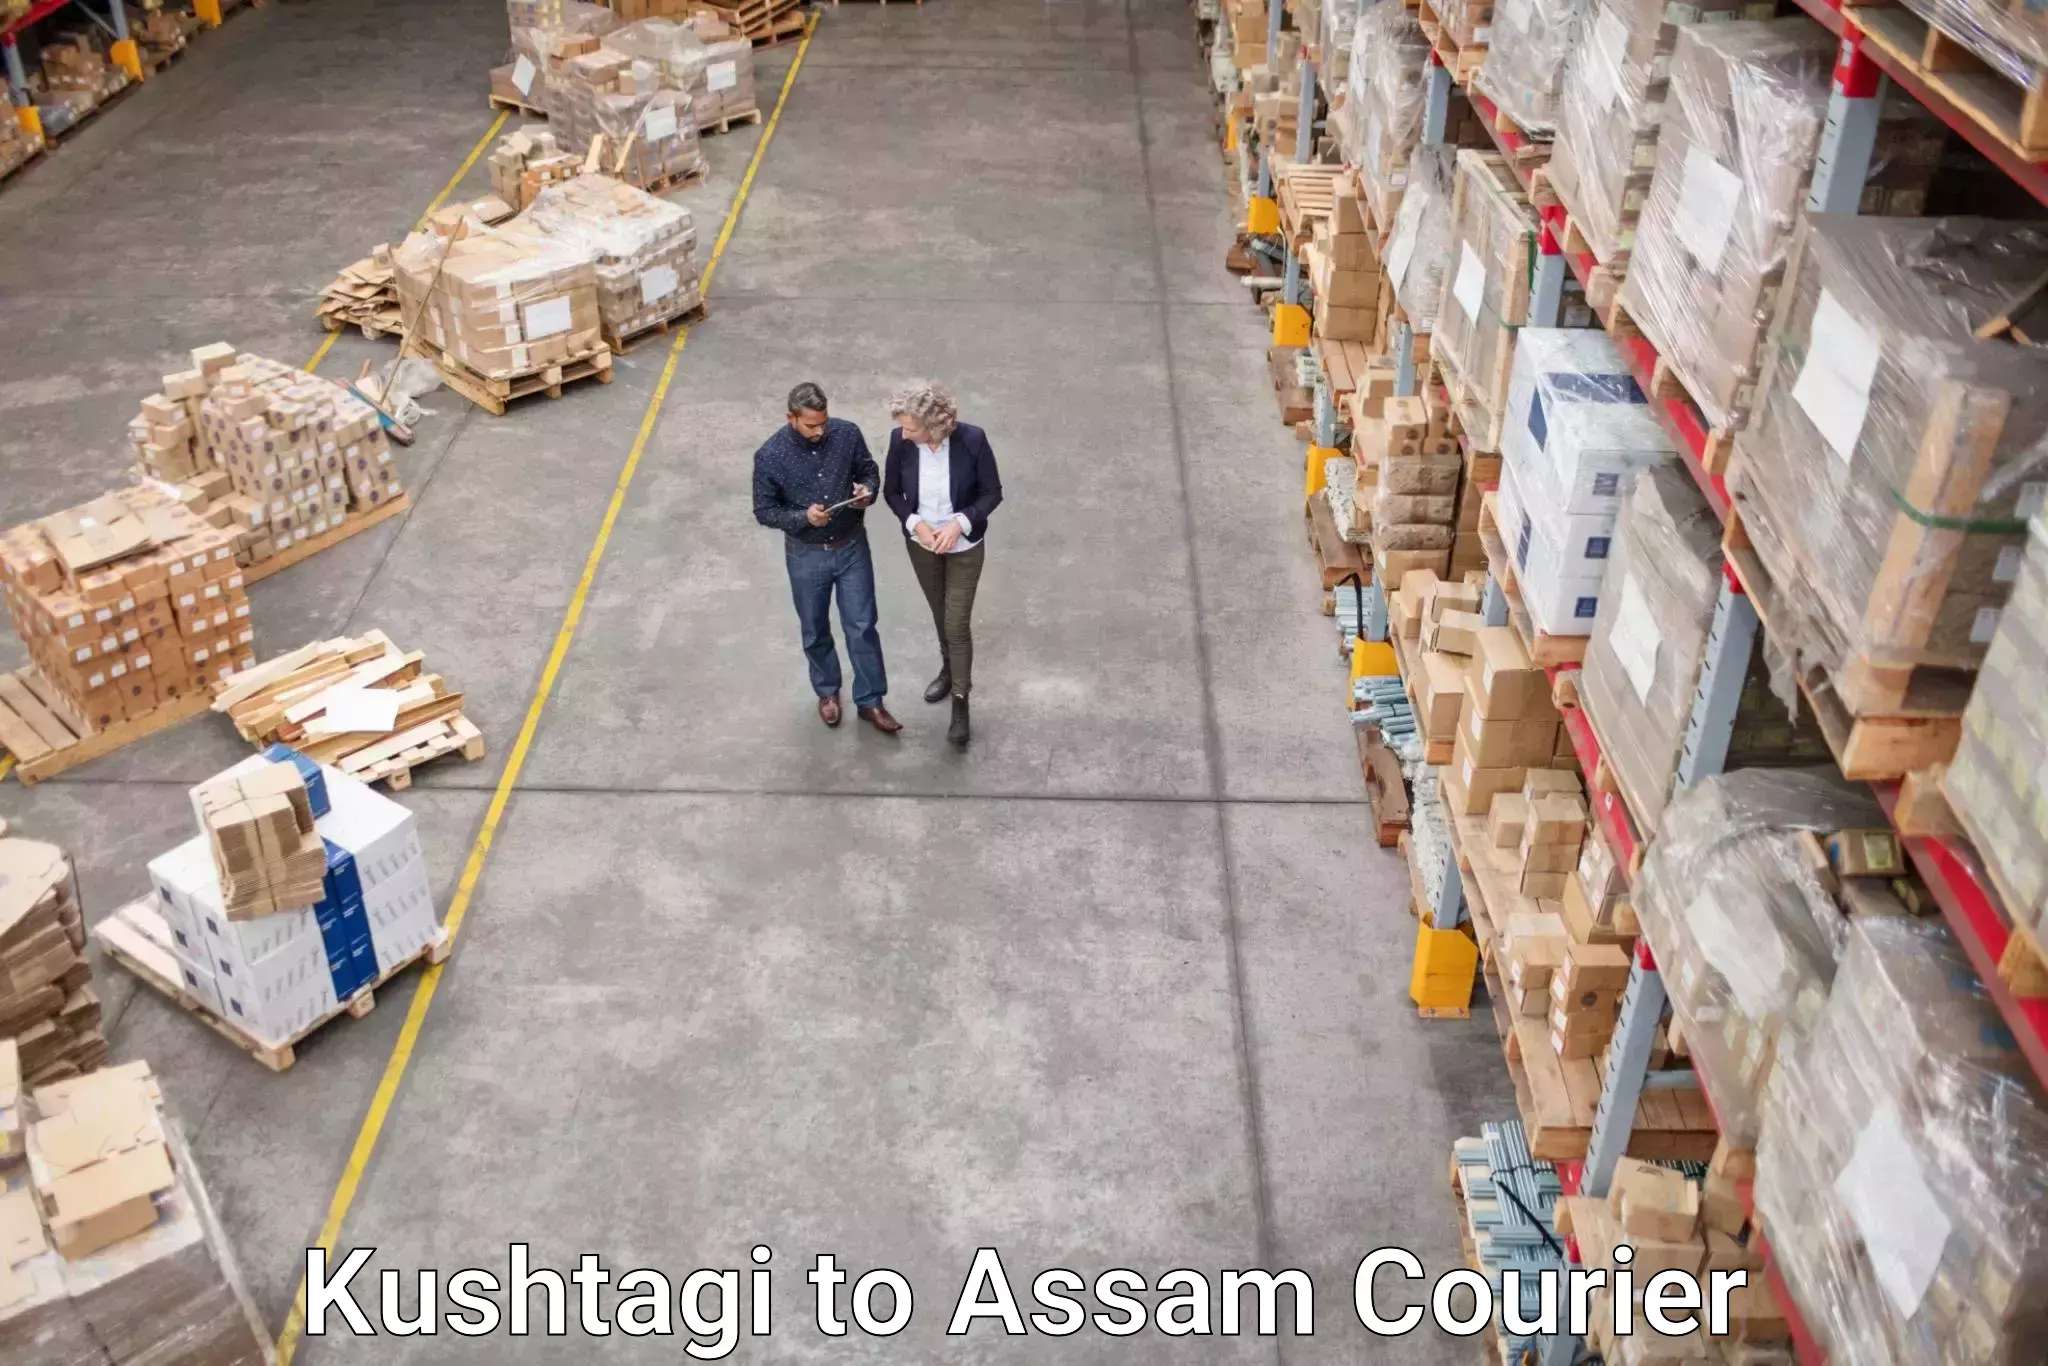 Global parcel delivery Kushtagi to Assam